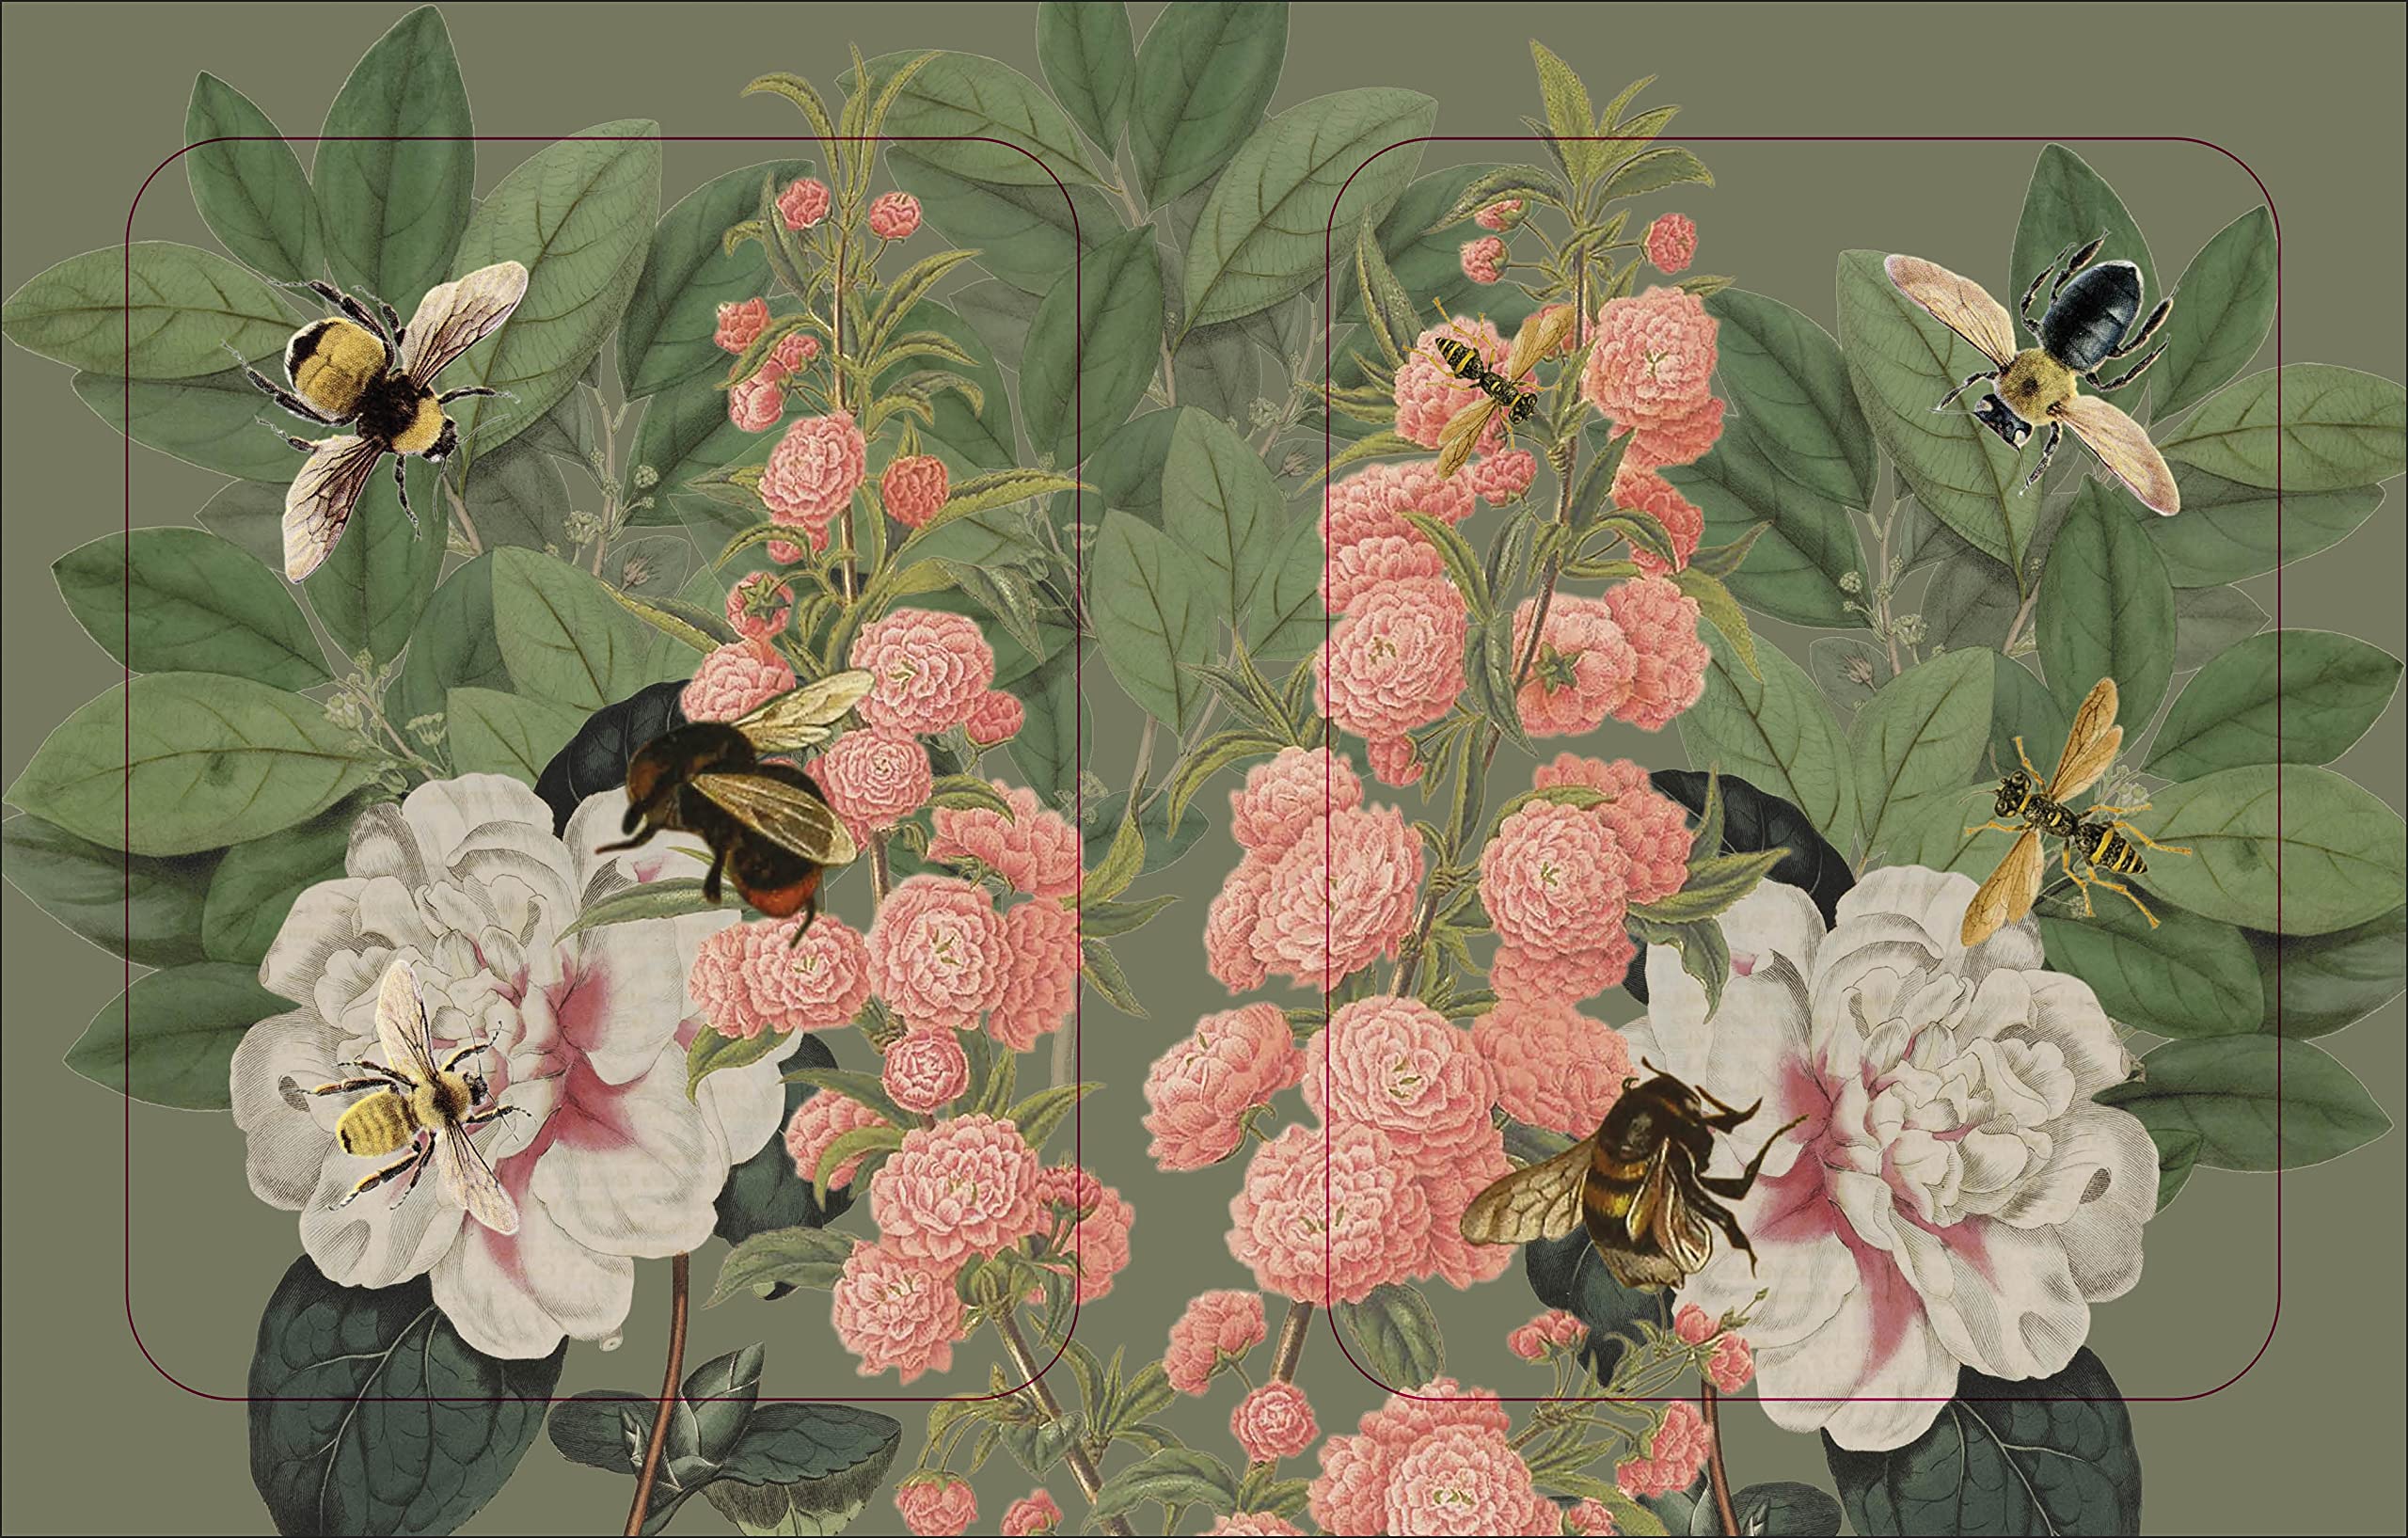 The Bees, Birds & Butterflies Sticker Anthology  | DK